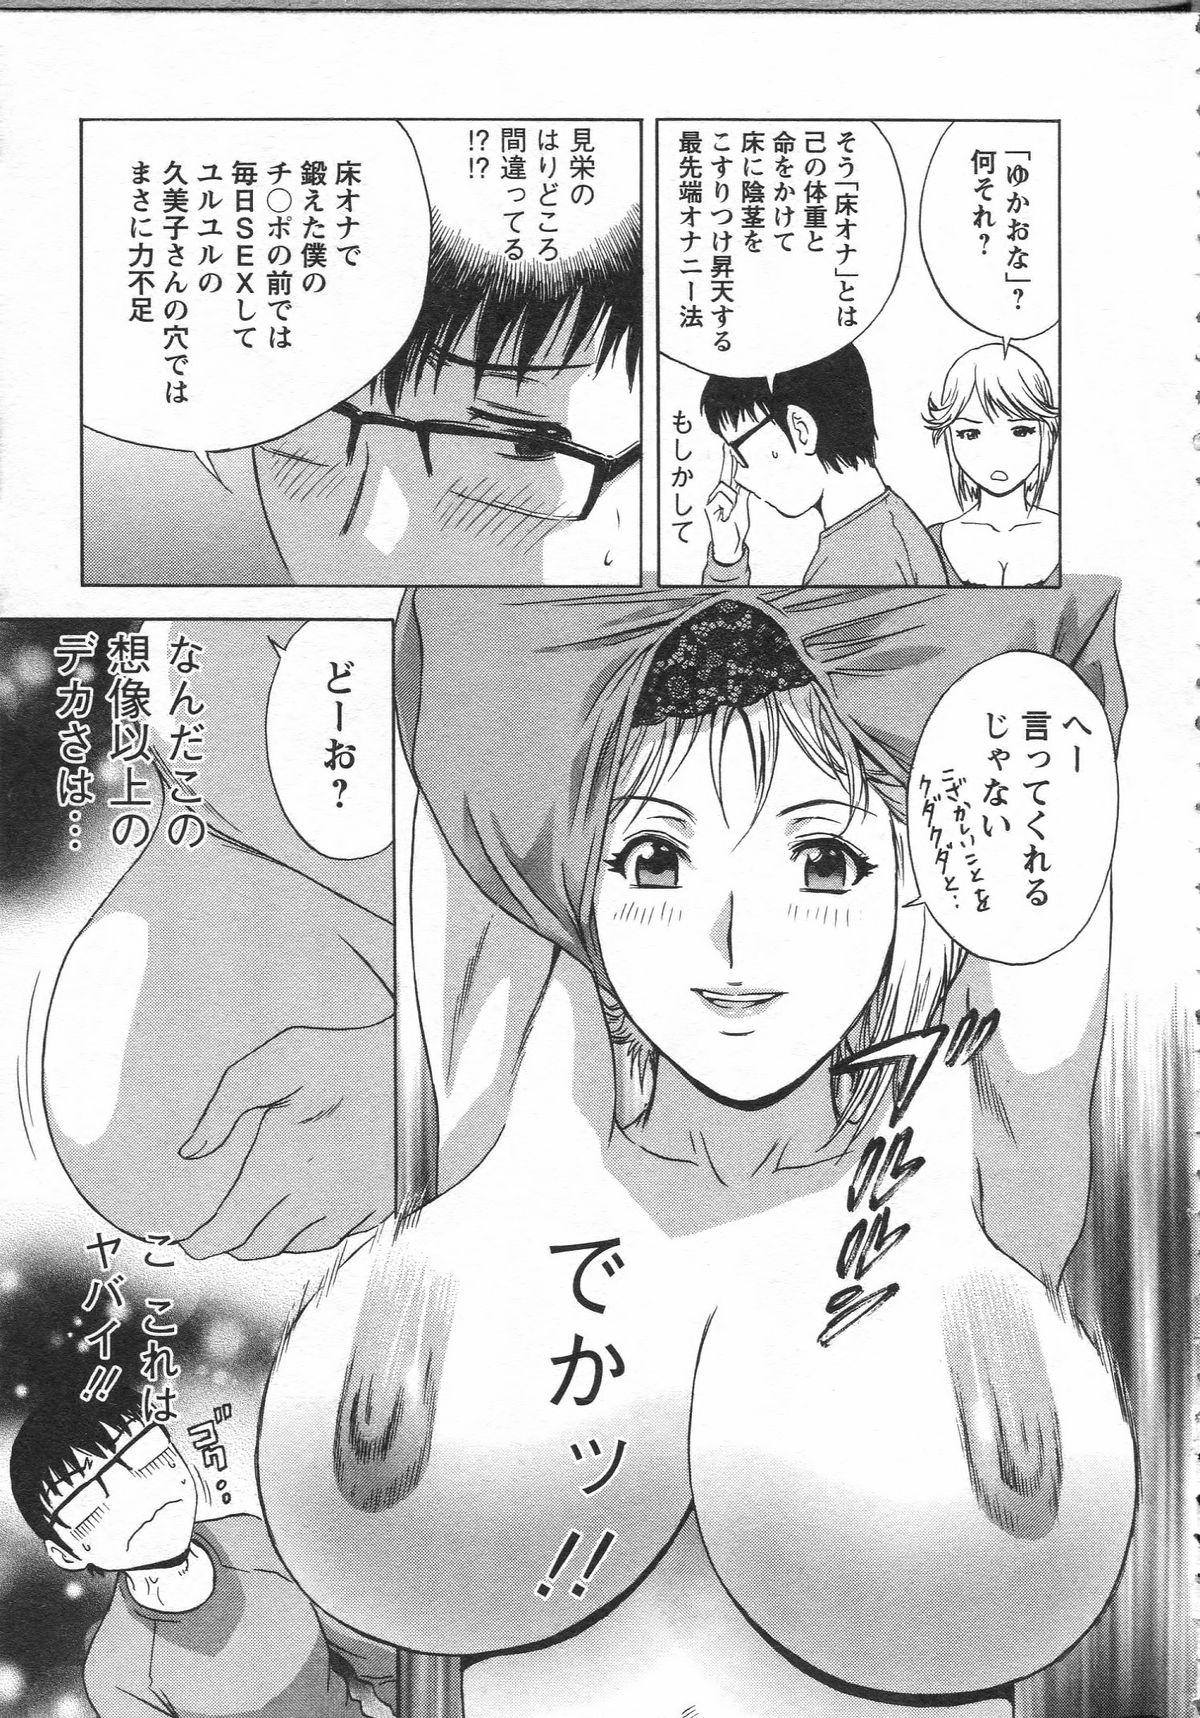 Manga no youna Hitozuma to no Hibi - Days with Married Women such as Comics. 30